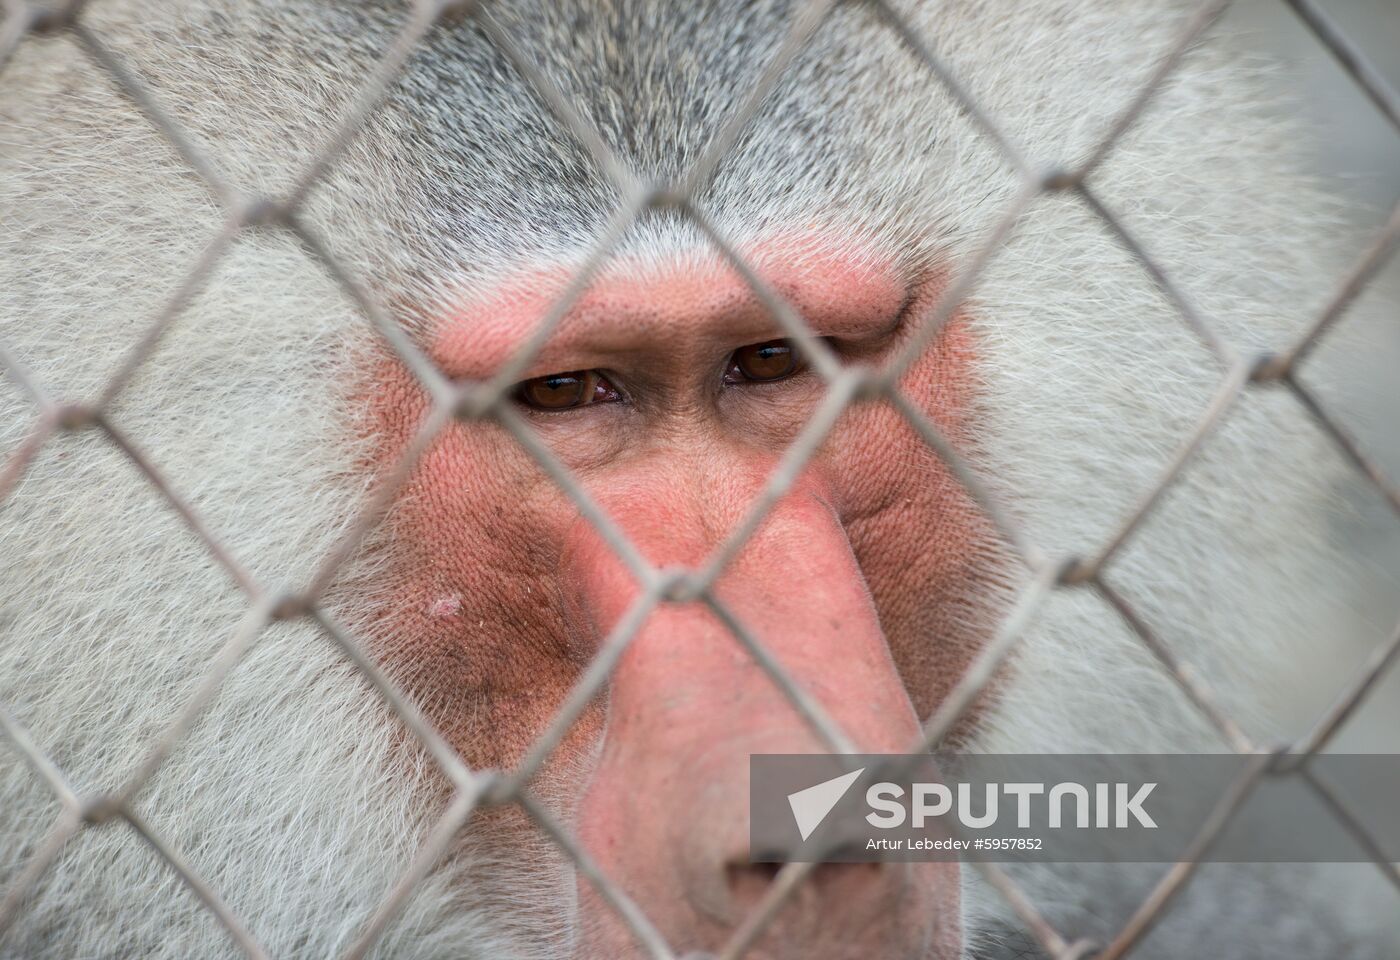 Russia Primate Center